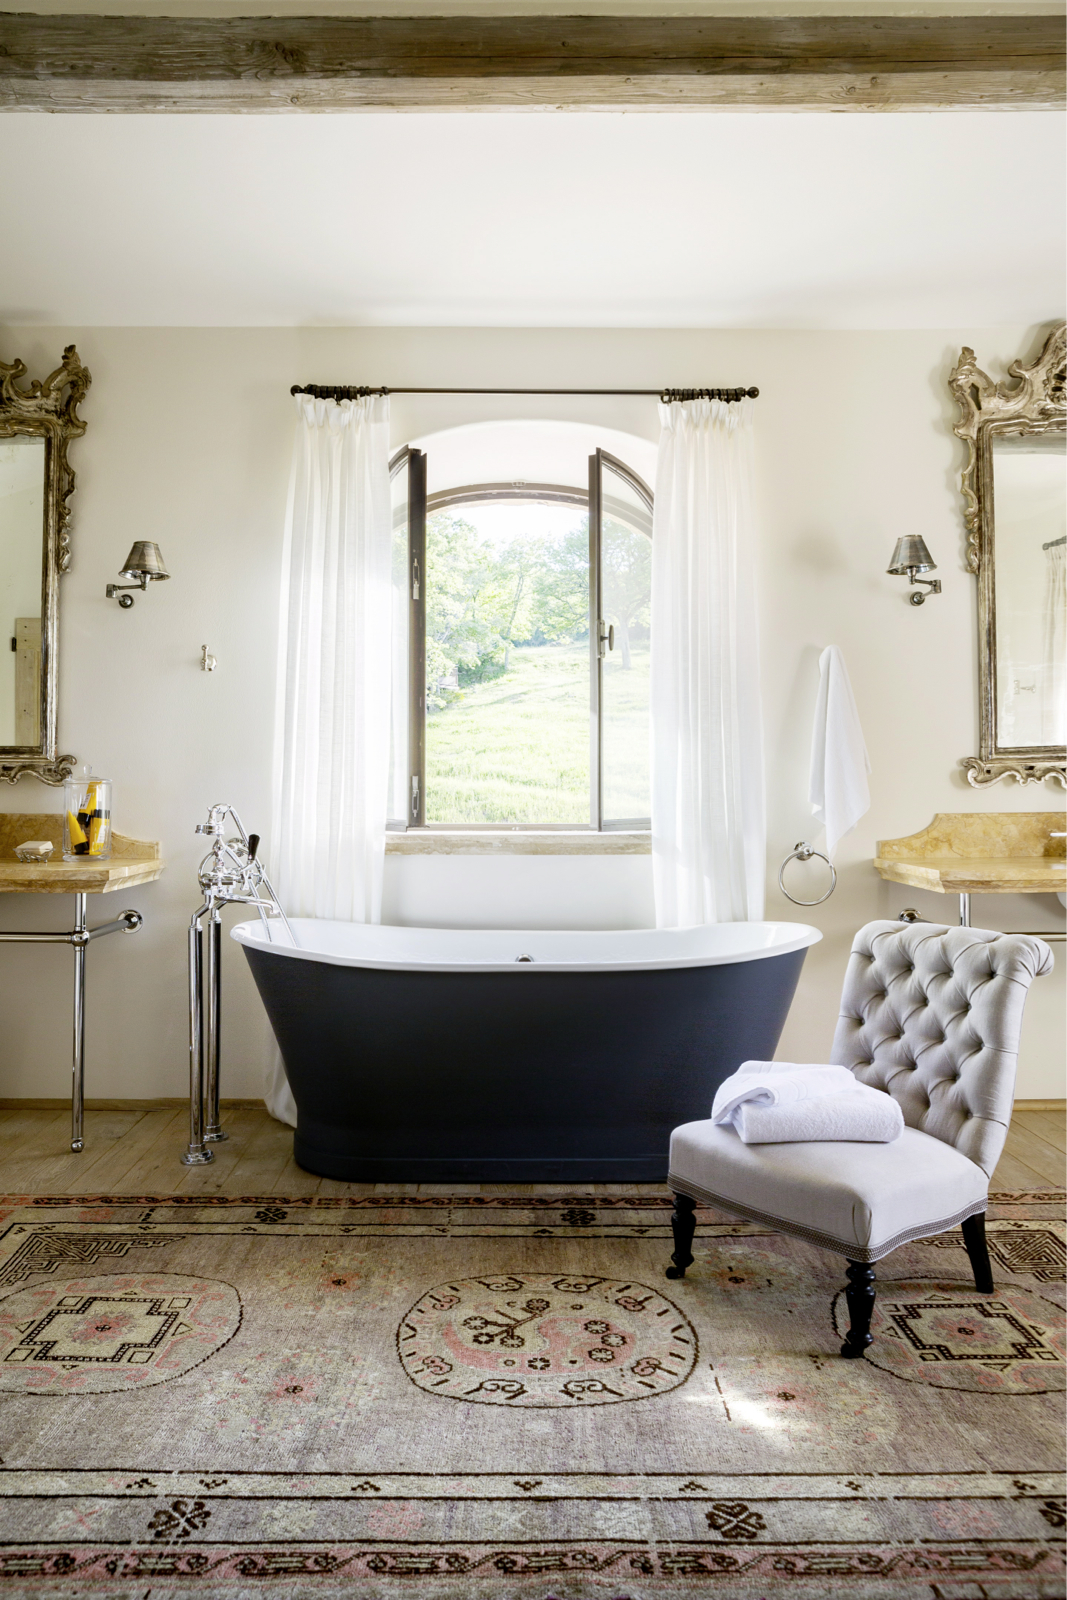 Nội thất cổ điển là yếu tố không thể vắng mặt khi trang trí phòng tắm phong cách tương đồng. 